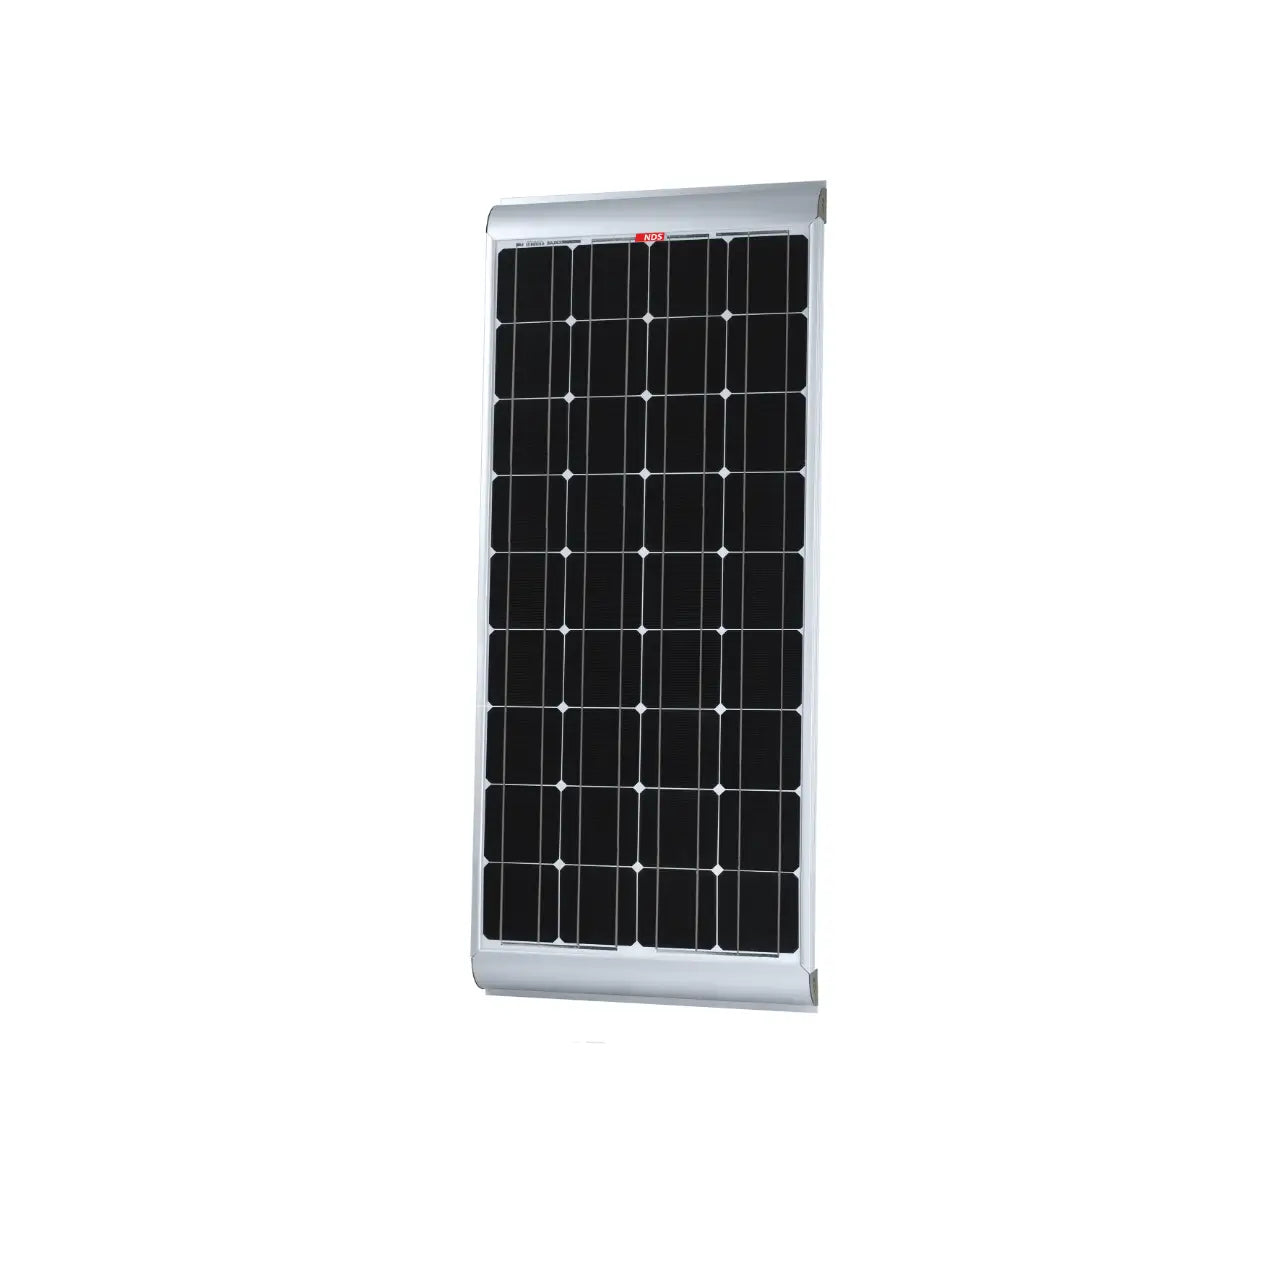 NDS Energy SolEnergy Solar Panel